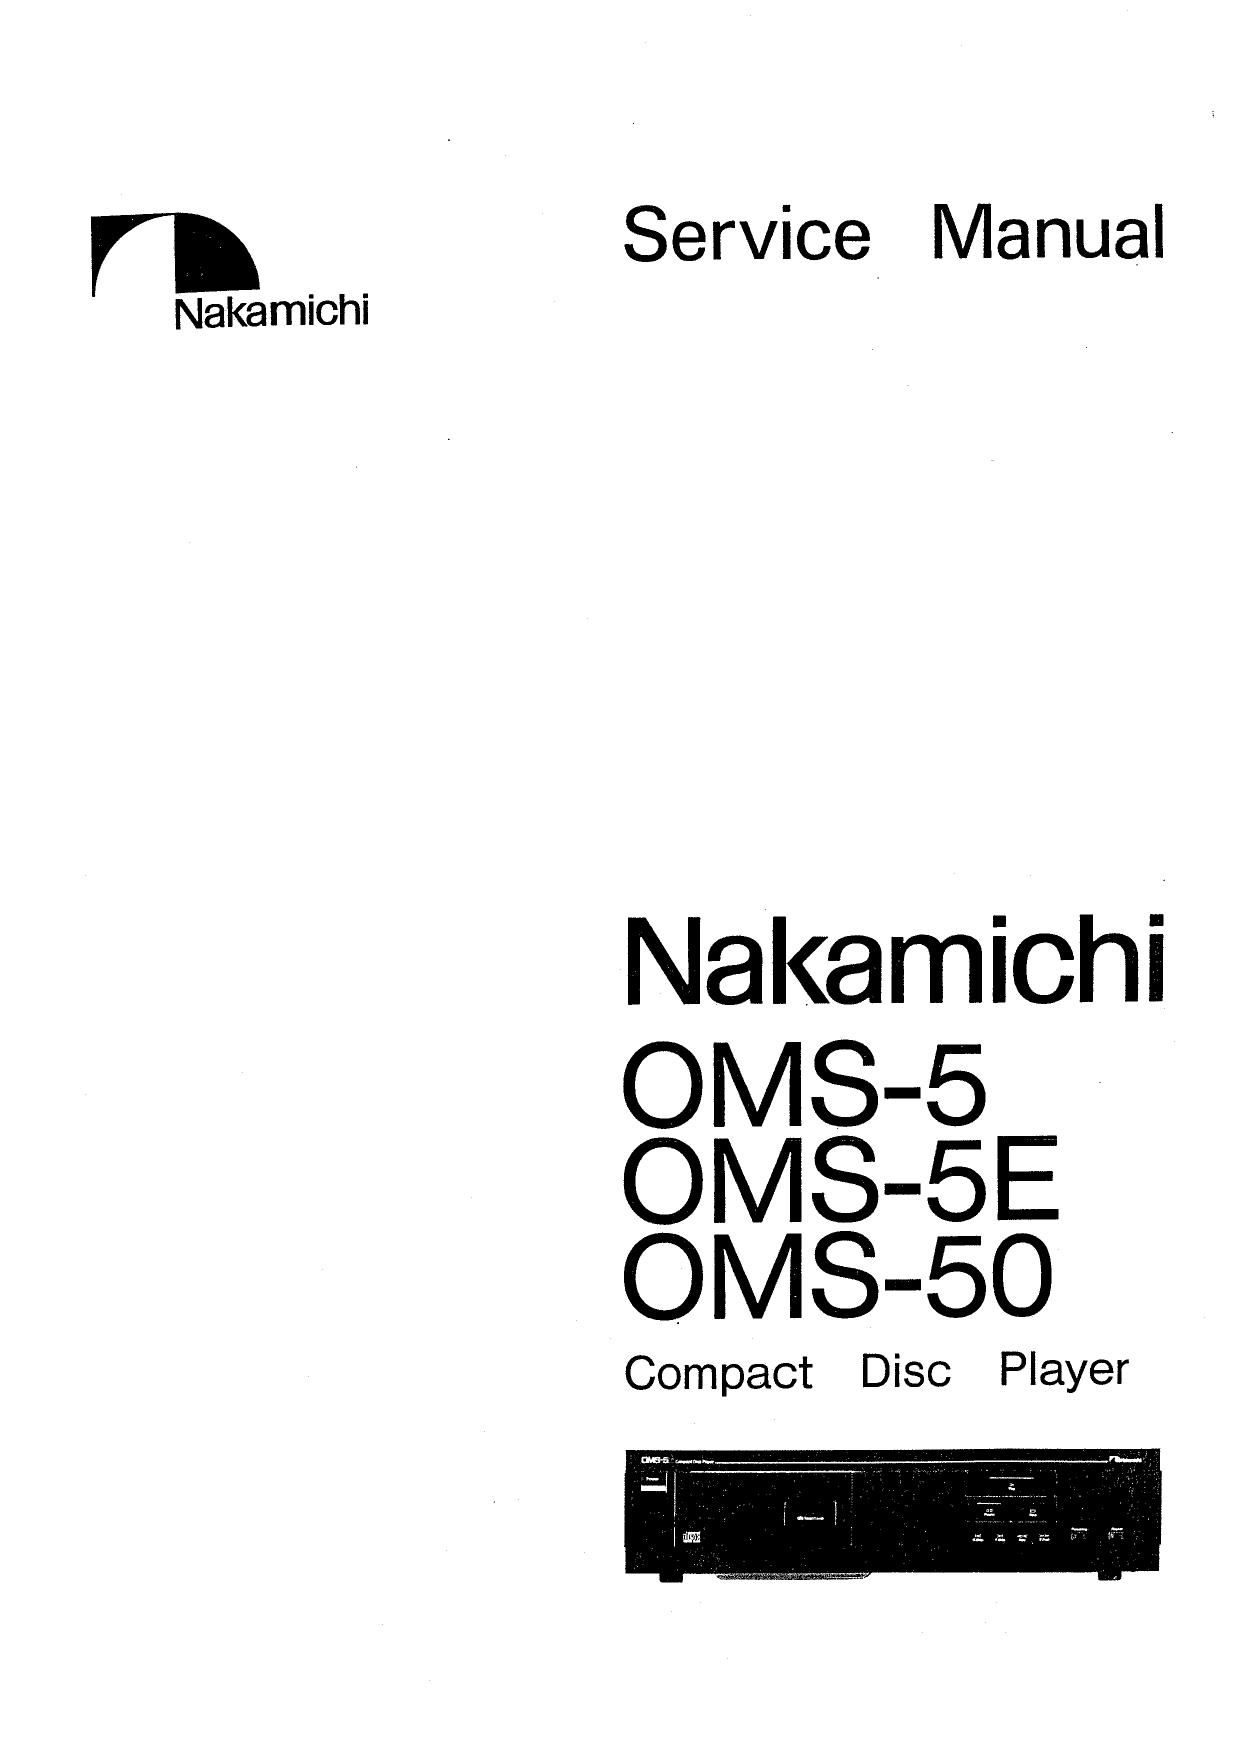 Nakamichi OMS 5 Service Manual